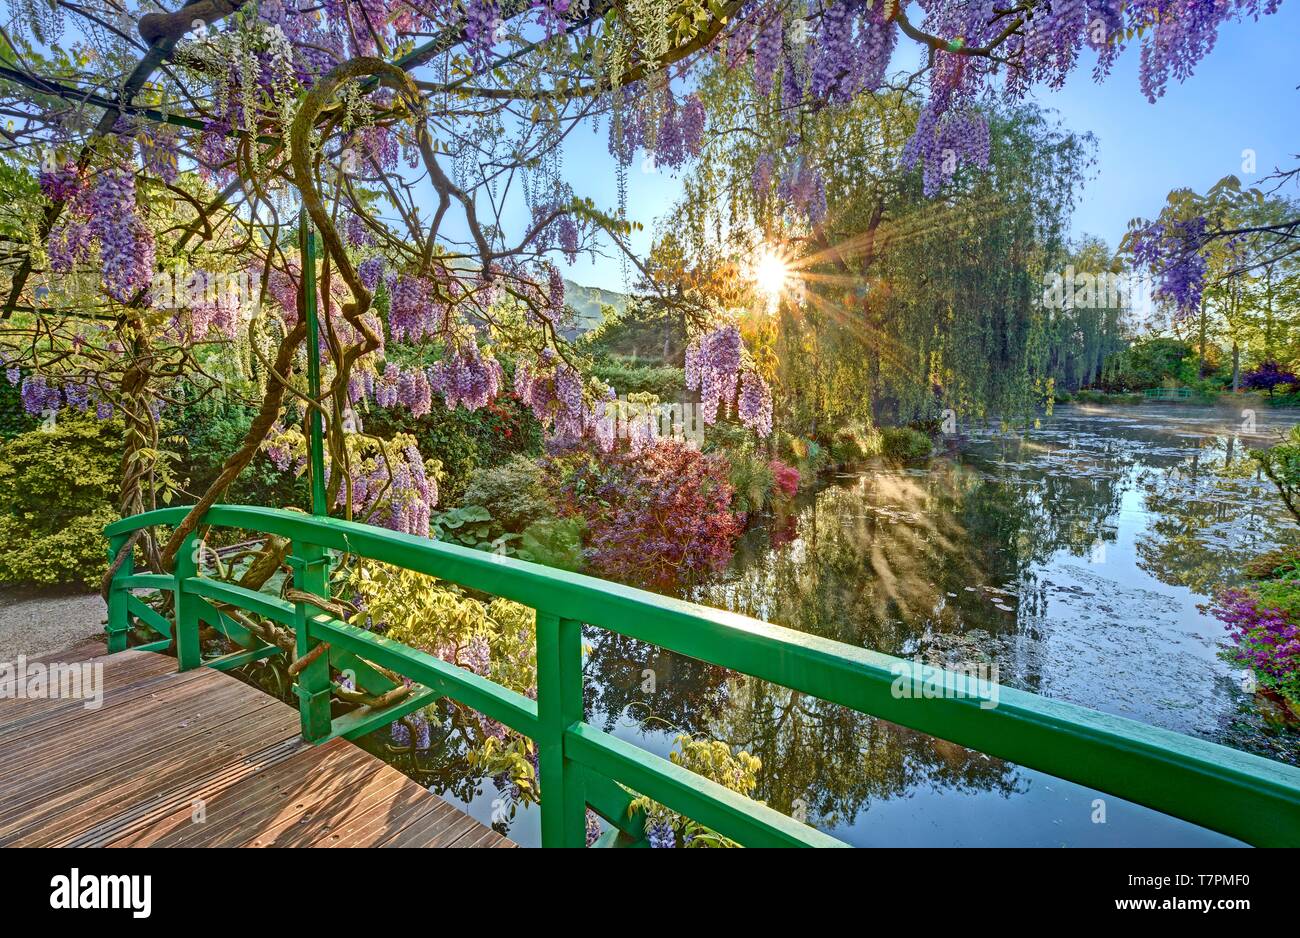 La France, l'Eure, Giverny, Claude Monet, le jardin japonais de glycine en fleurs Banque D'Images